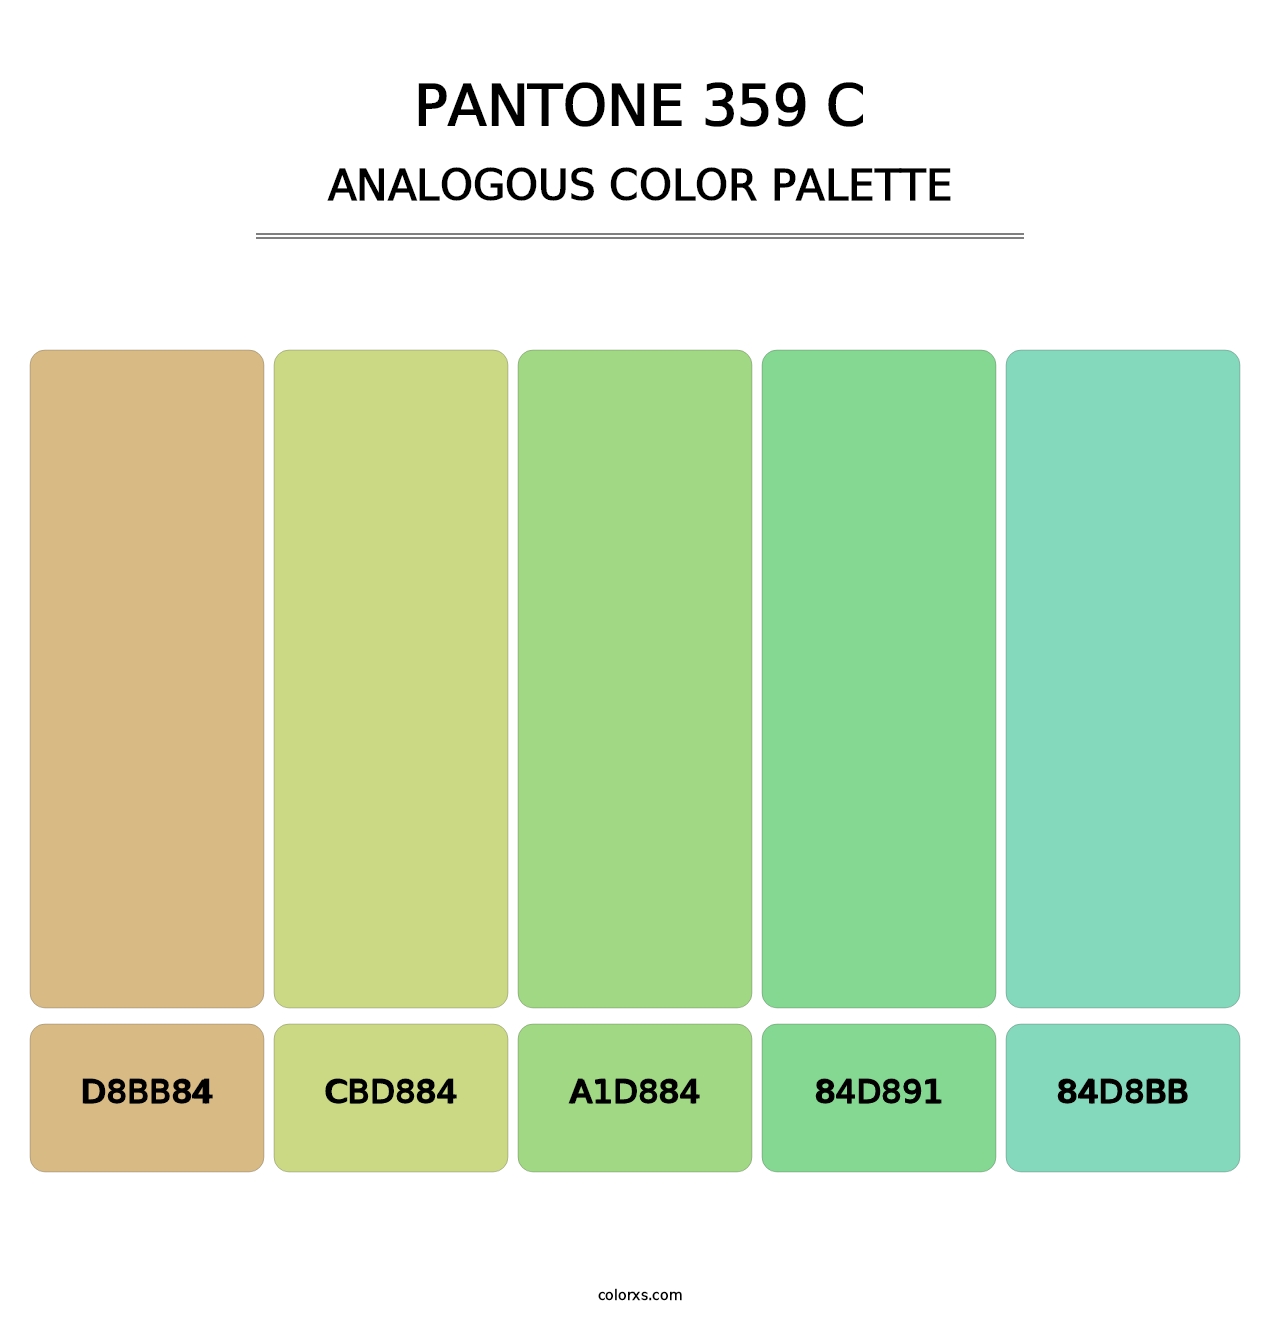 PANTONE 359 C - Analogous Color Palette